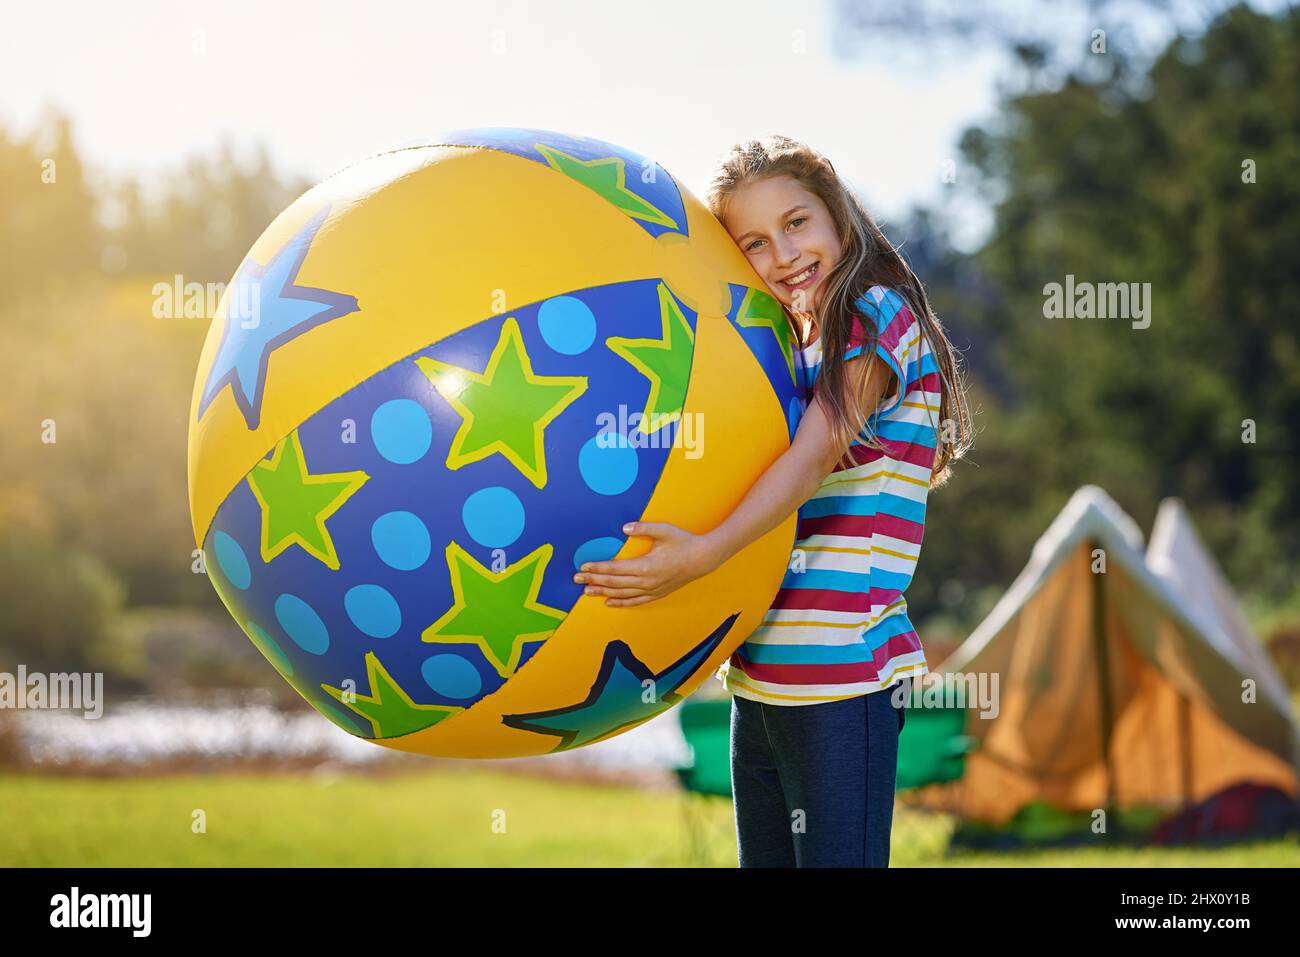 Je suis un ballon cet été. Portrait d'une adolescente tenant un énorme ballon gonflable à l'extérieur. Banque D'Images